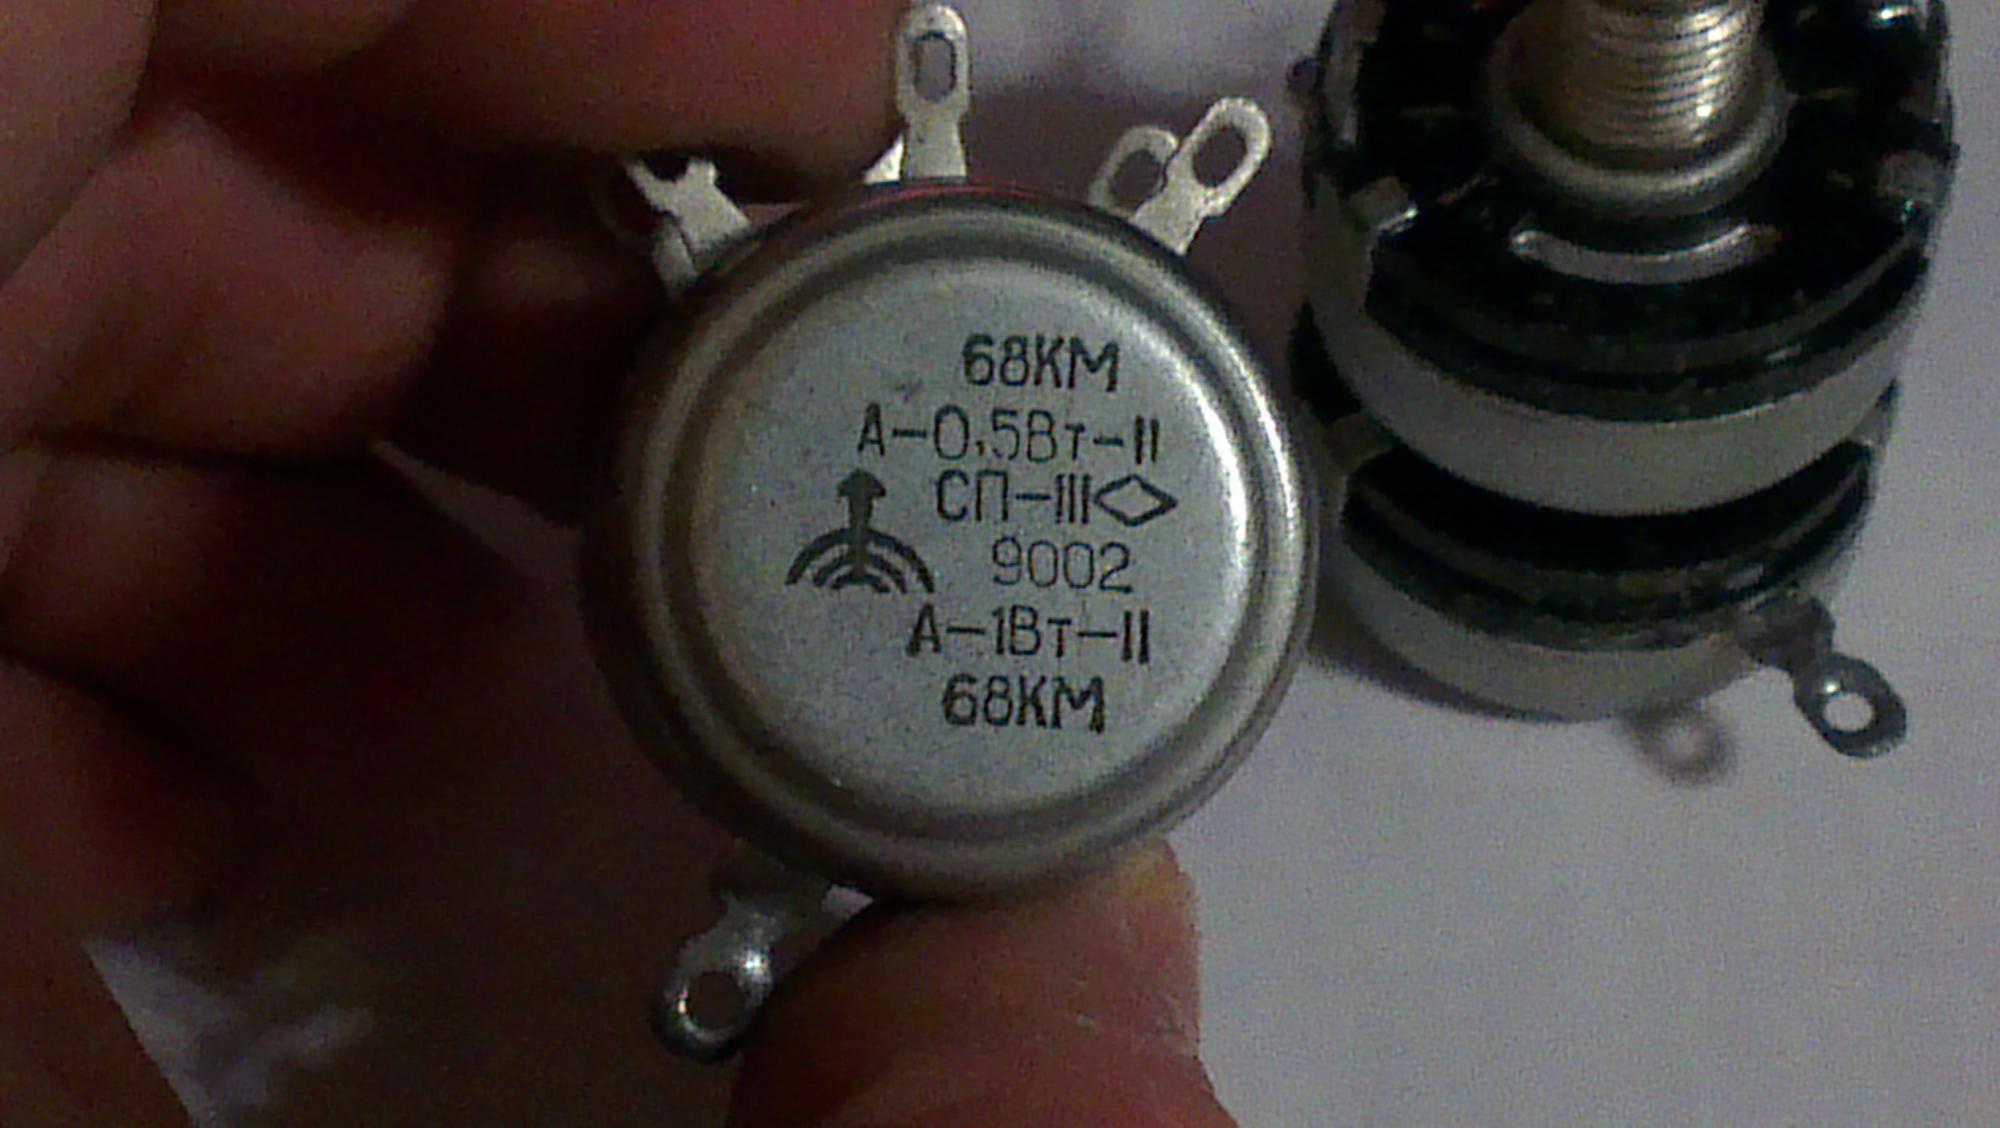 Сп 1.3 статус. Сдвоенный переменный резистор СП-1. Резистор переменный сдвоенный сп3-12. Резистор СП-1 0783 А-1вт-11 68кв. Резистор СП-III сдвоенный.